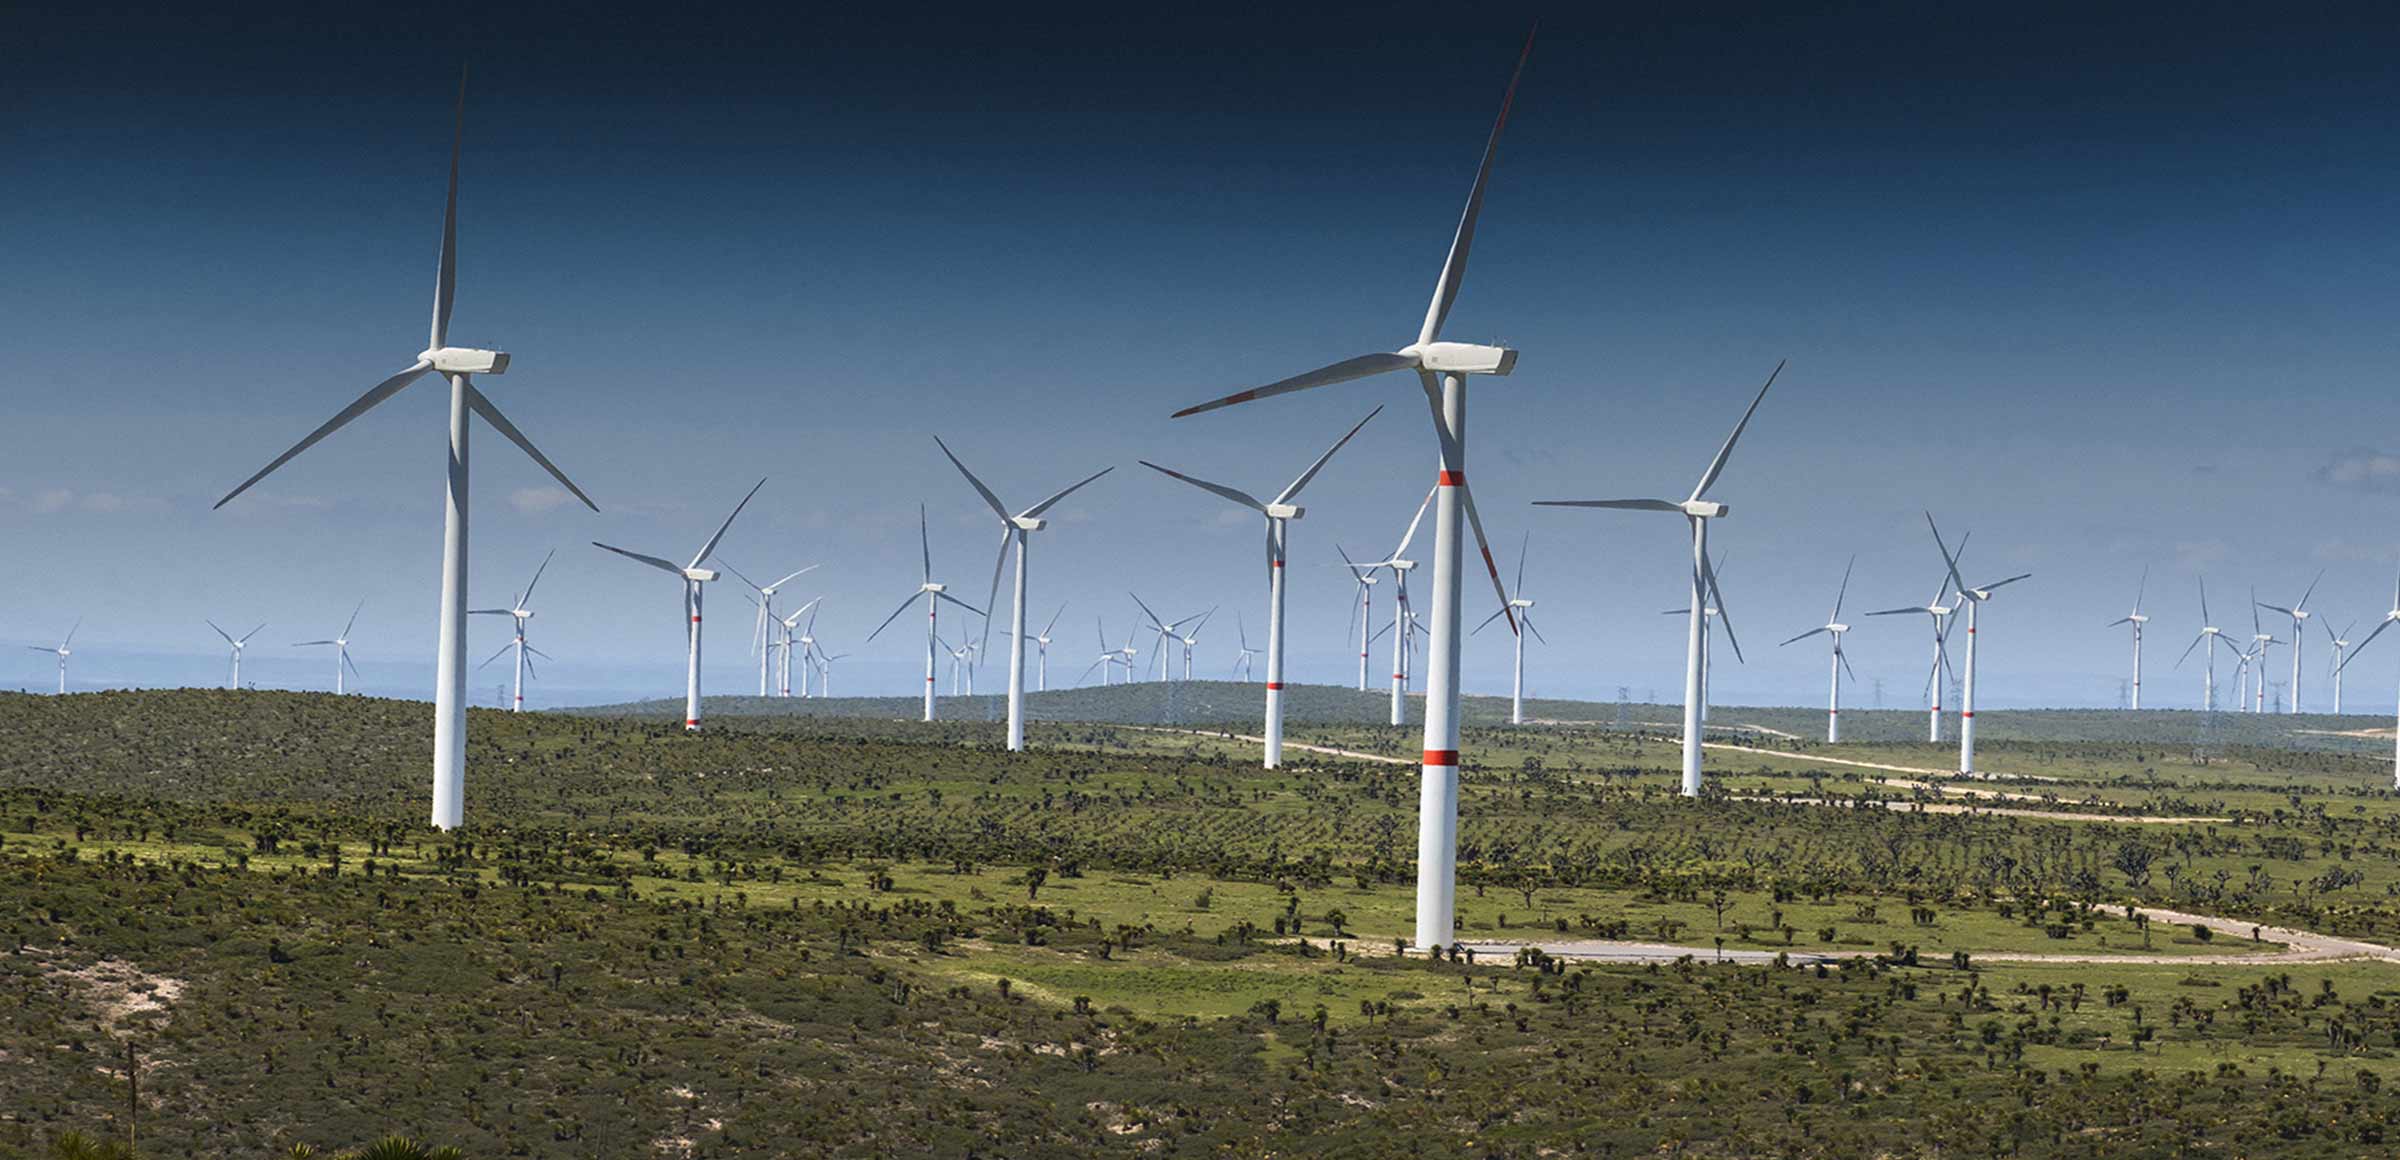 Erg inaugura in Sicilia un parco eolico, il primo con il repowering | L’iniziativa